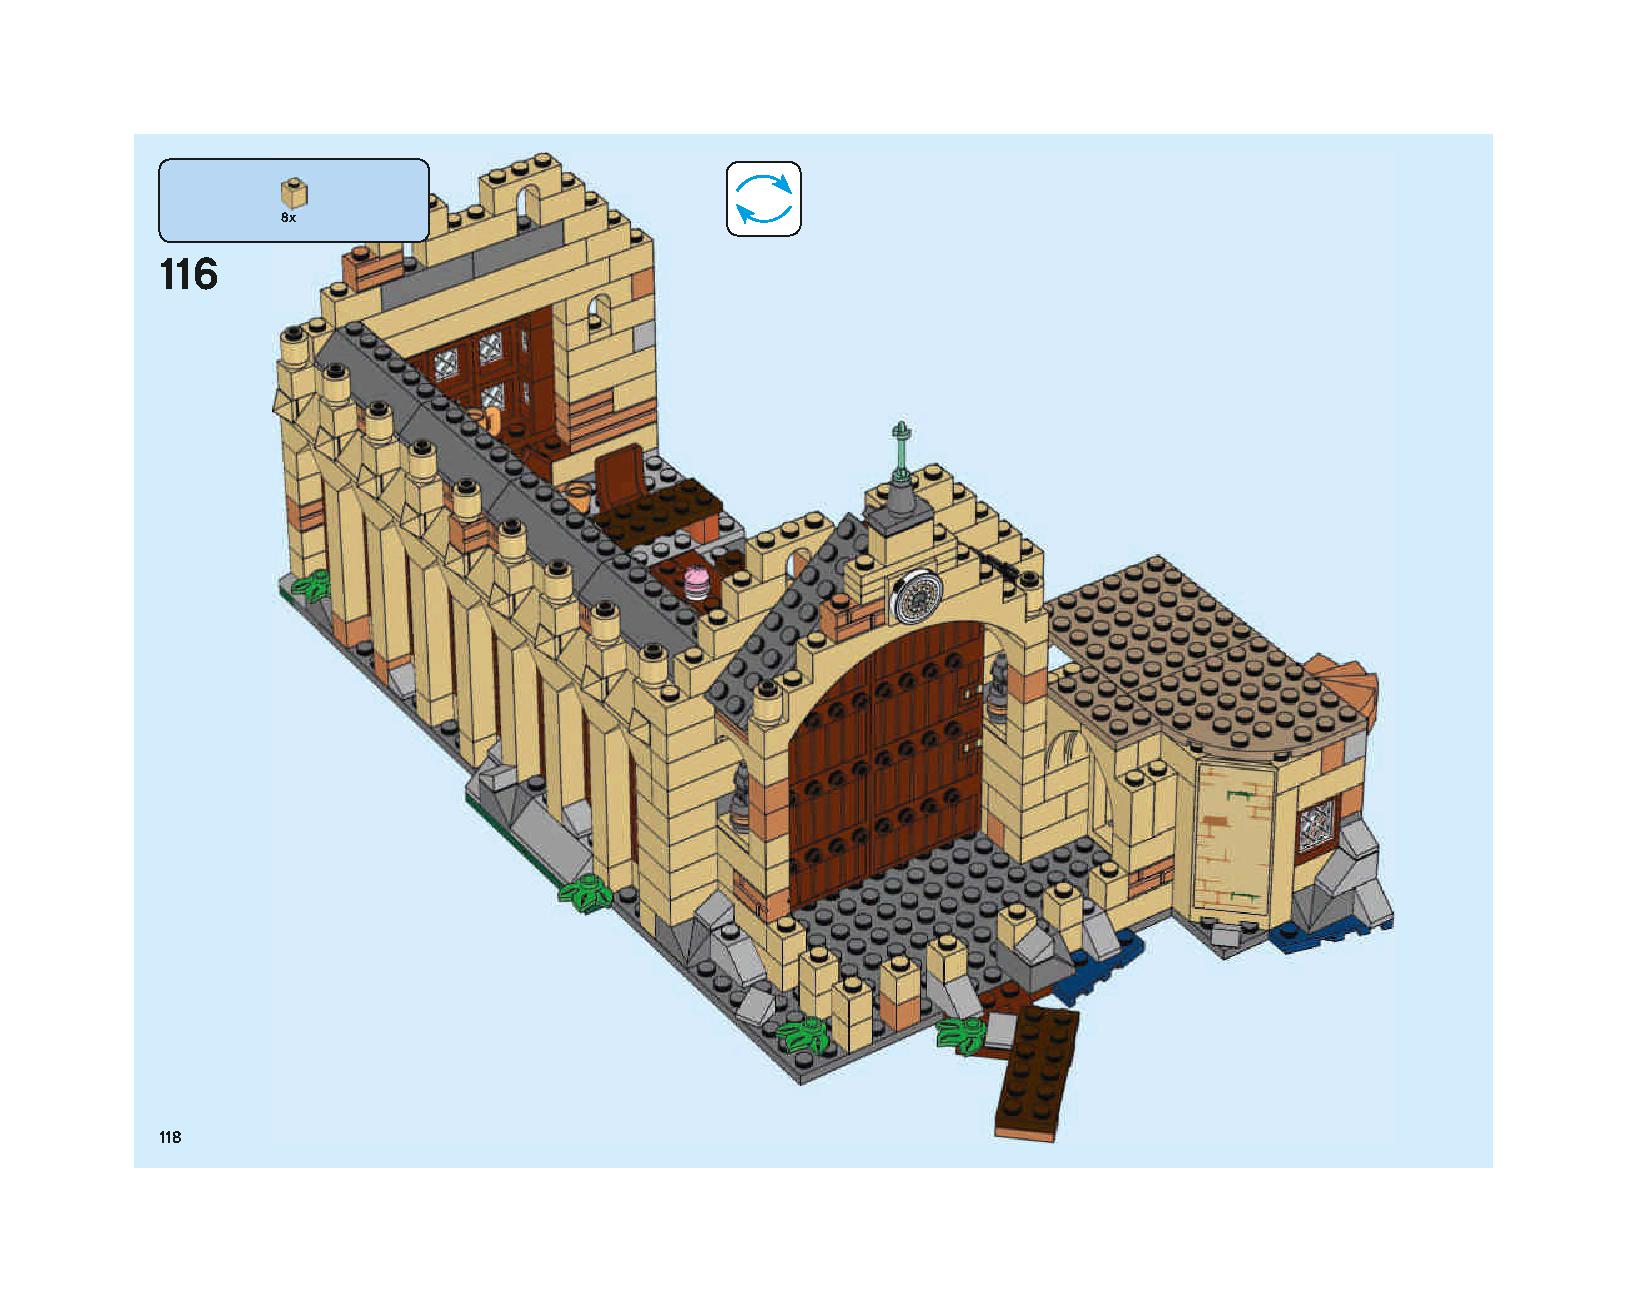 ホグワーツの大広間 75954 レゴの商品情報 レゴの説明書・組立方法 118 page